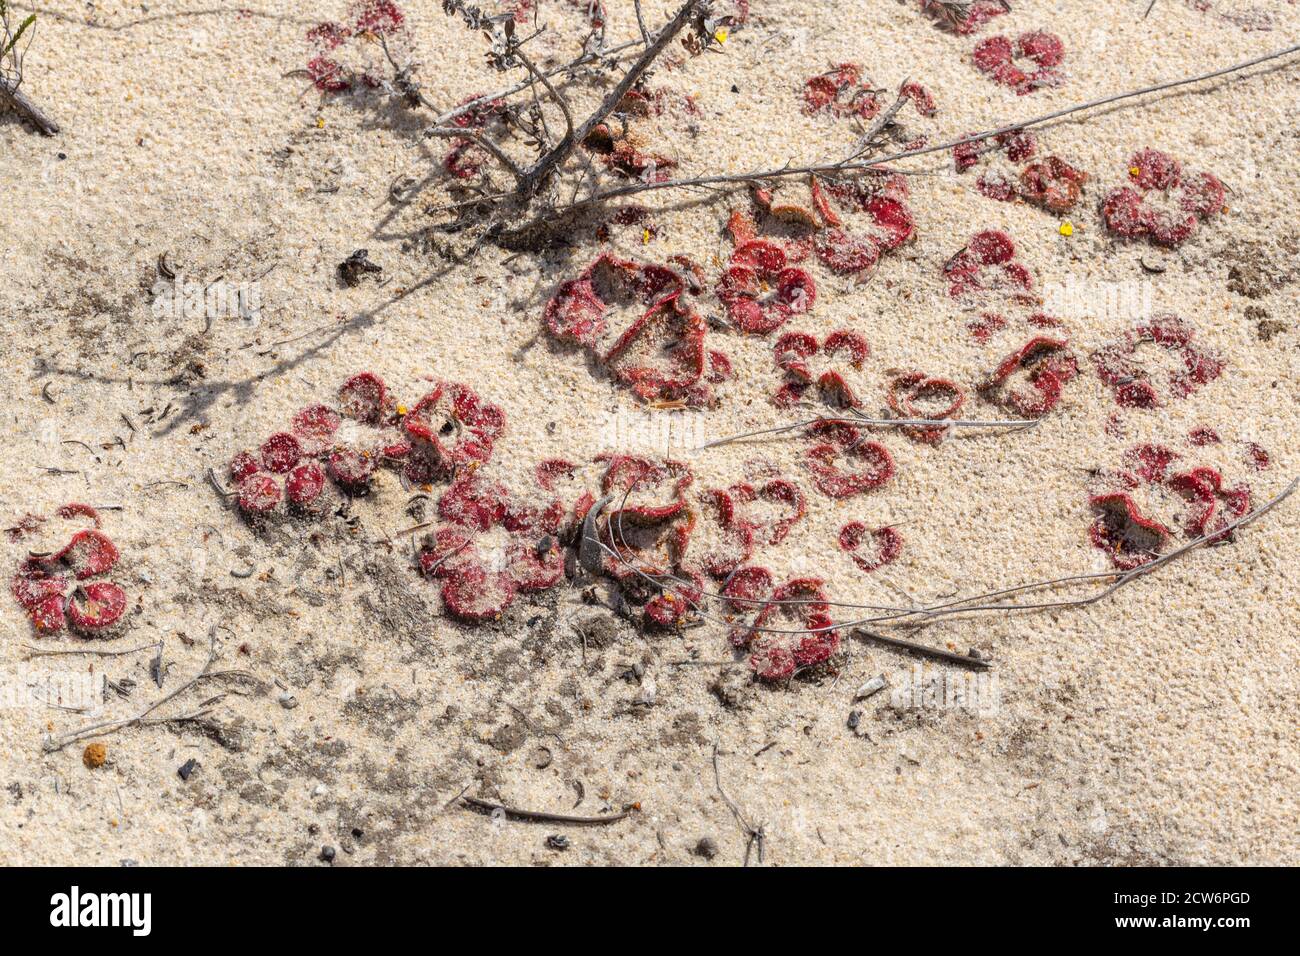 Drosera magna, nordöstlich von Jurien Bay, Westaustralien Stockfoto